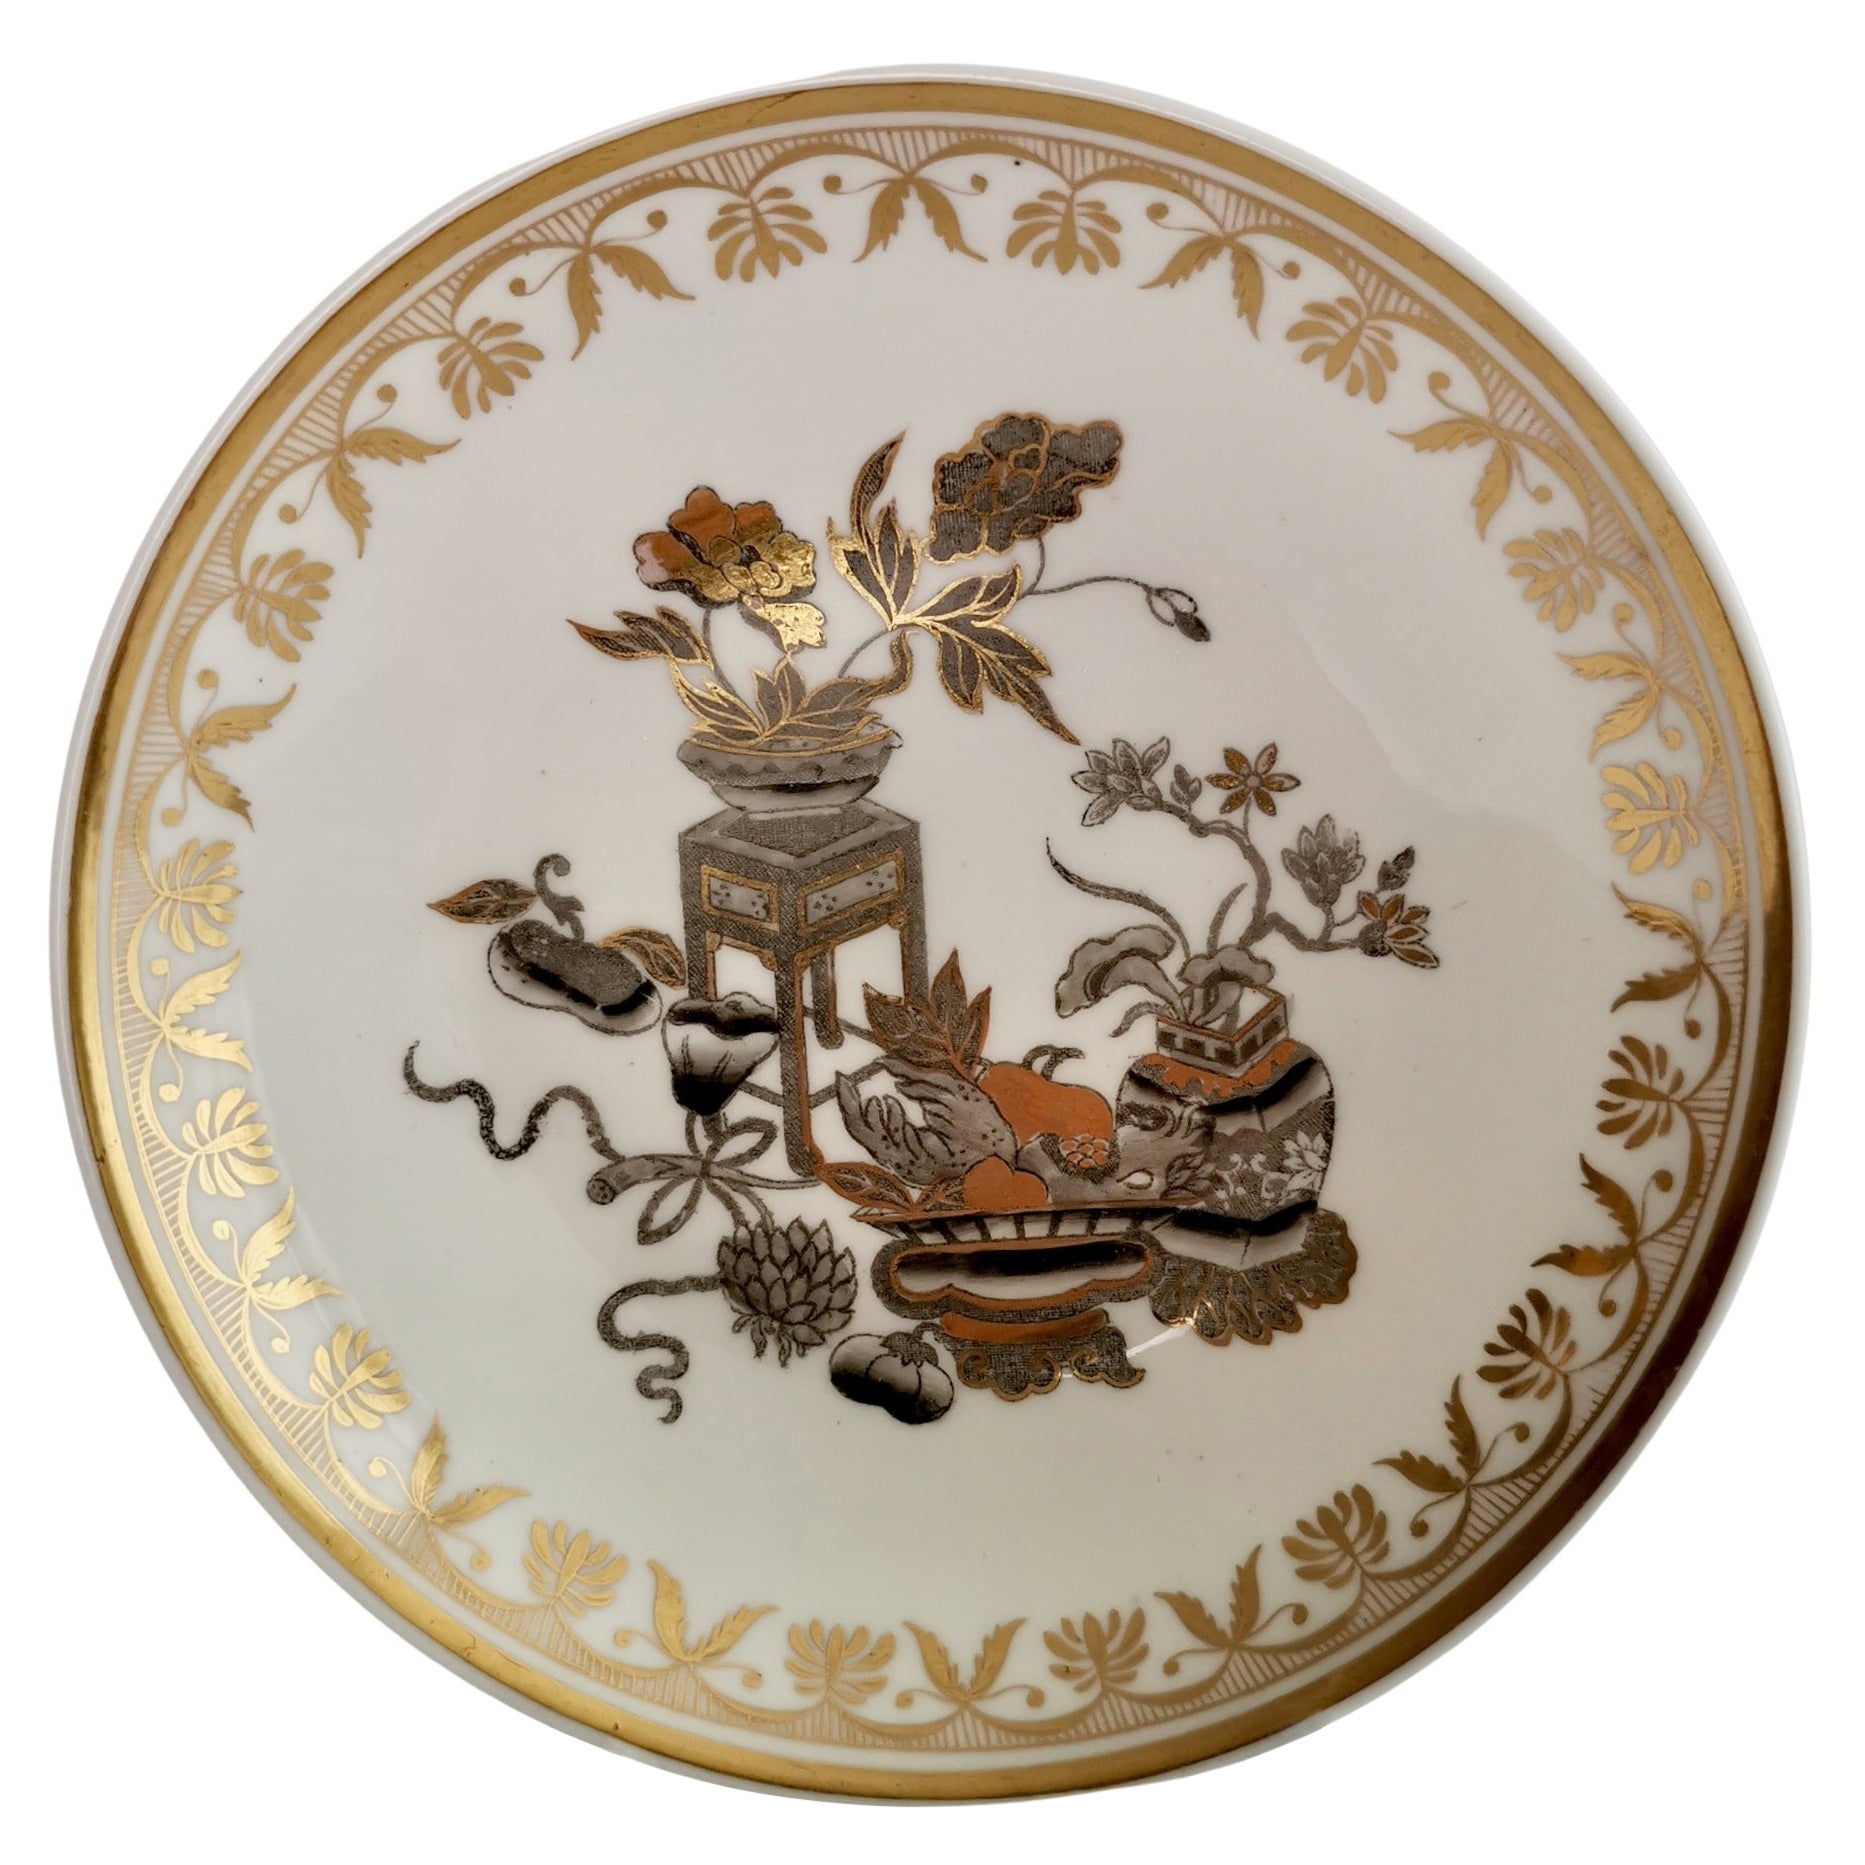 Saucière Spode ornée de fleurs potées dorées de style Chinoiserie, Régence, ca1820